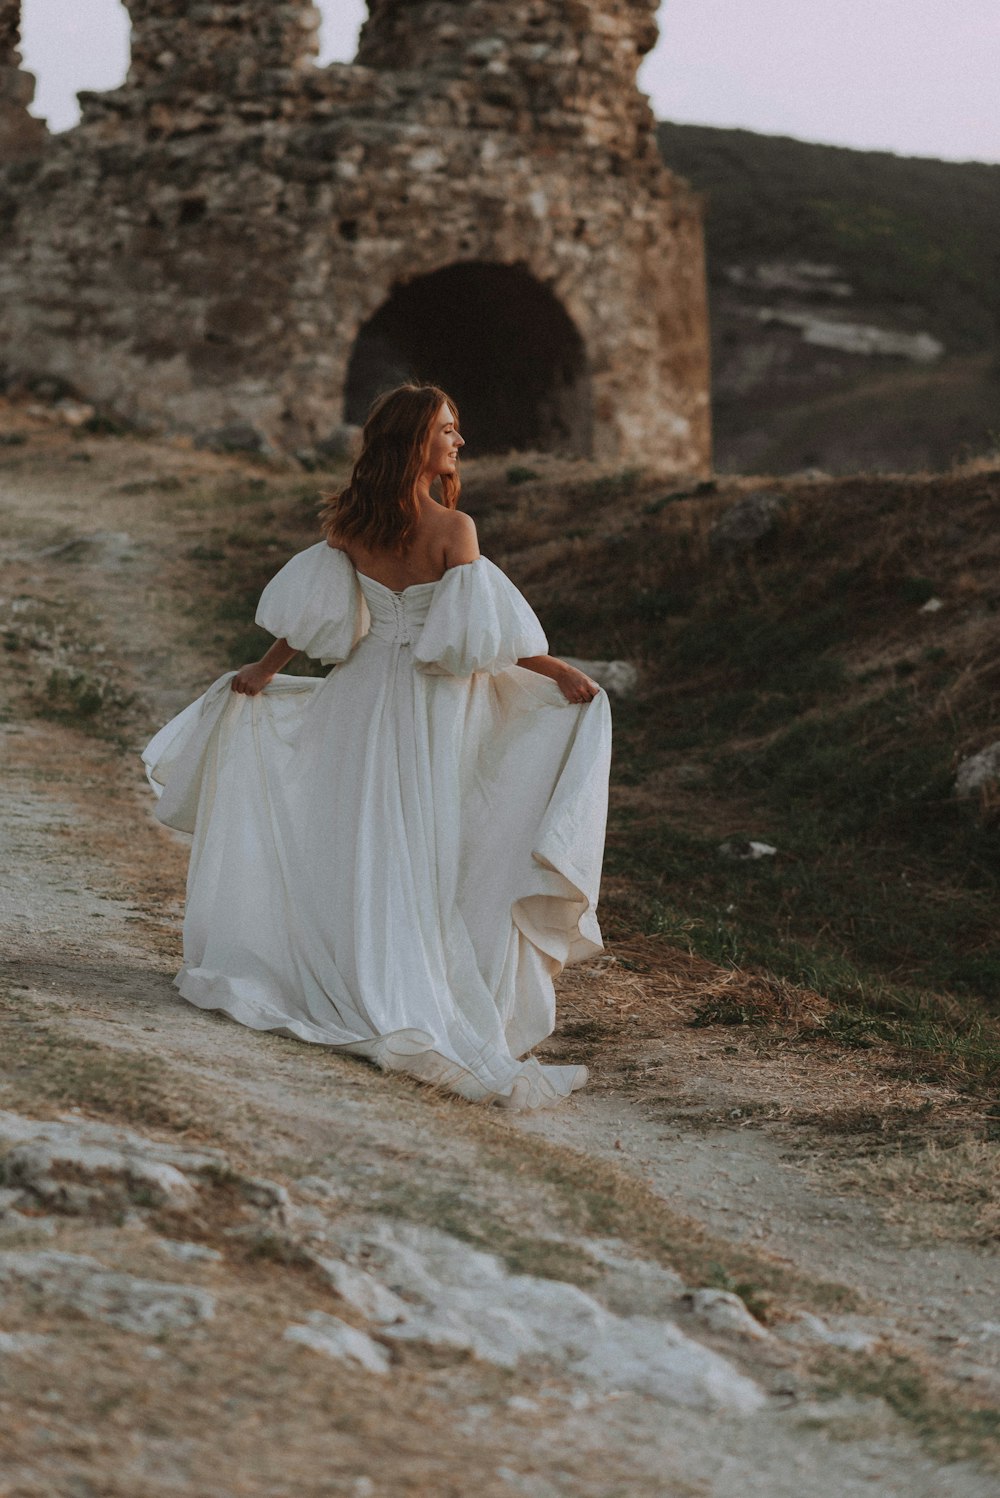 Eine Frau in einem weißen Kleid geht einen Feldweg entlang